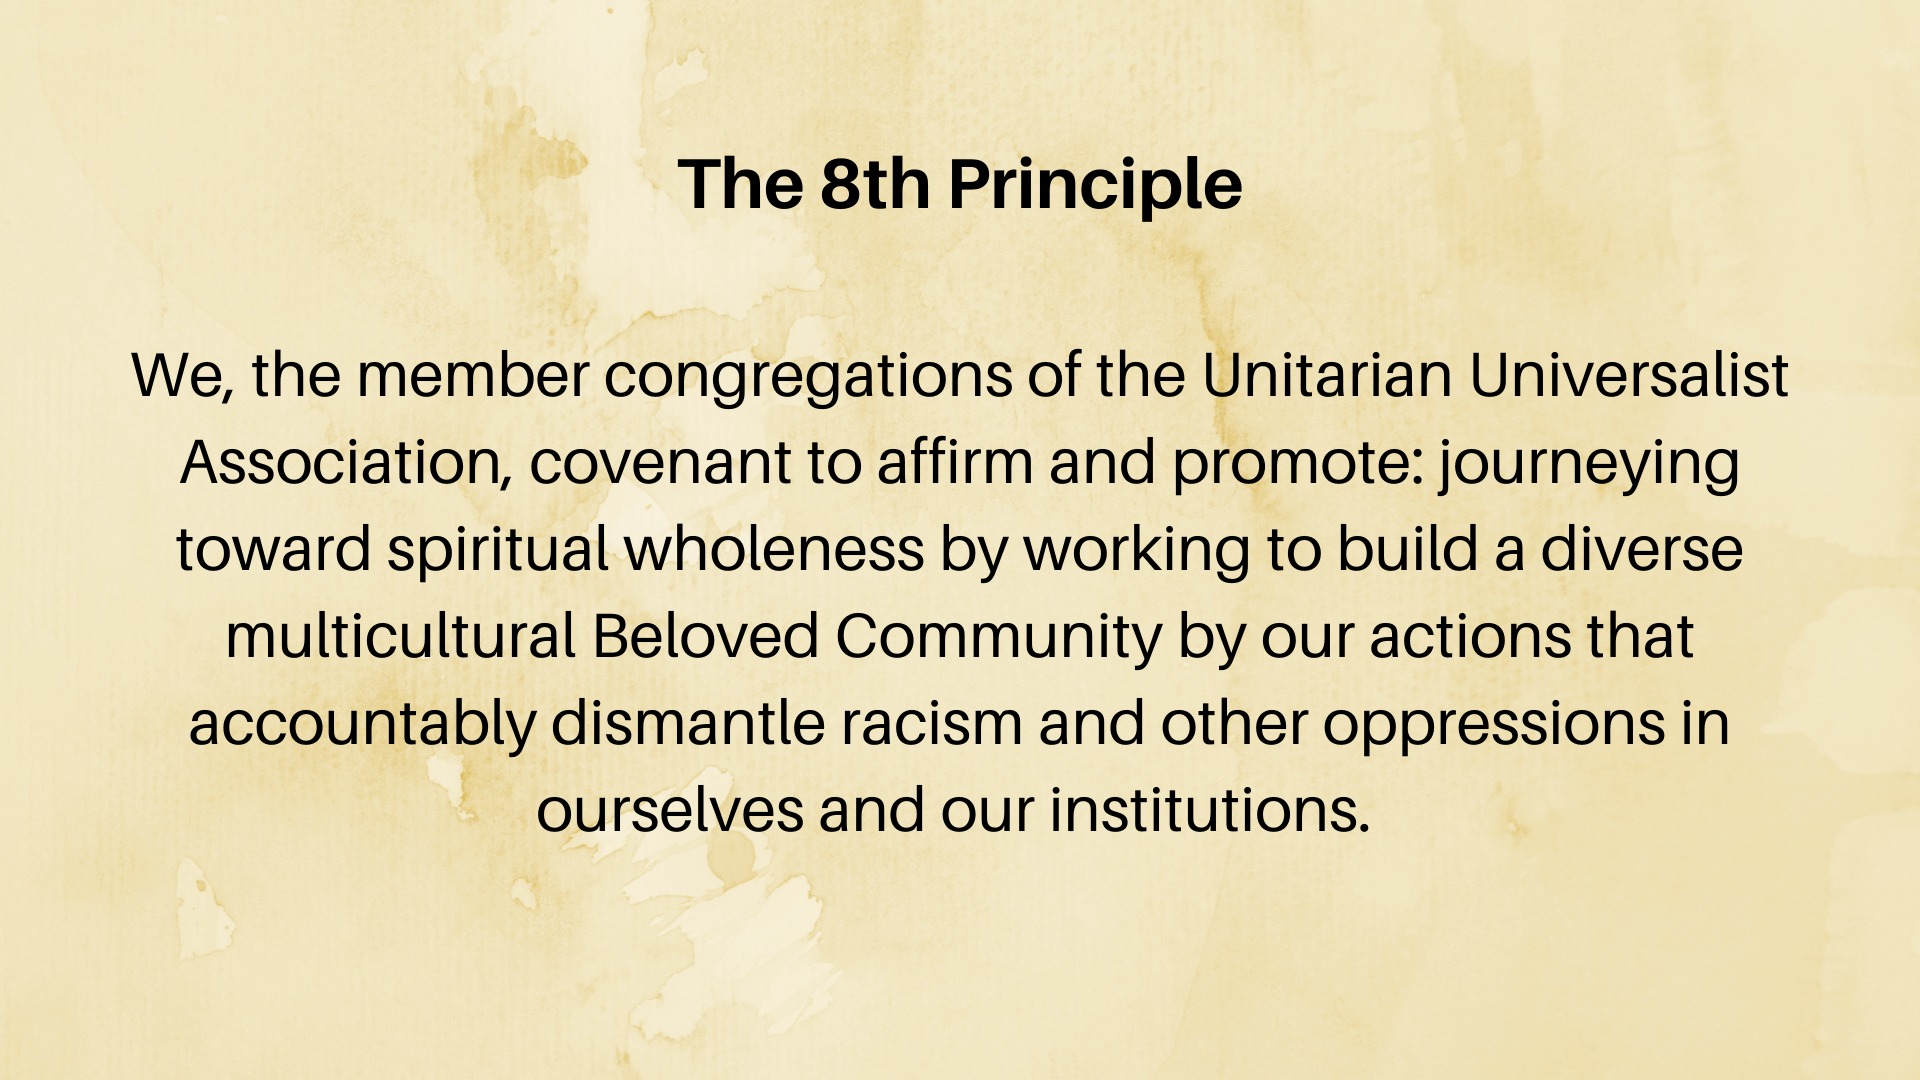 The 8th Principle